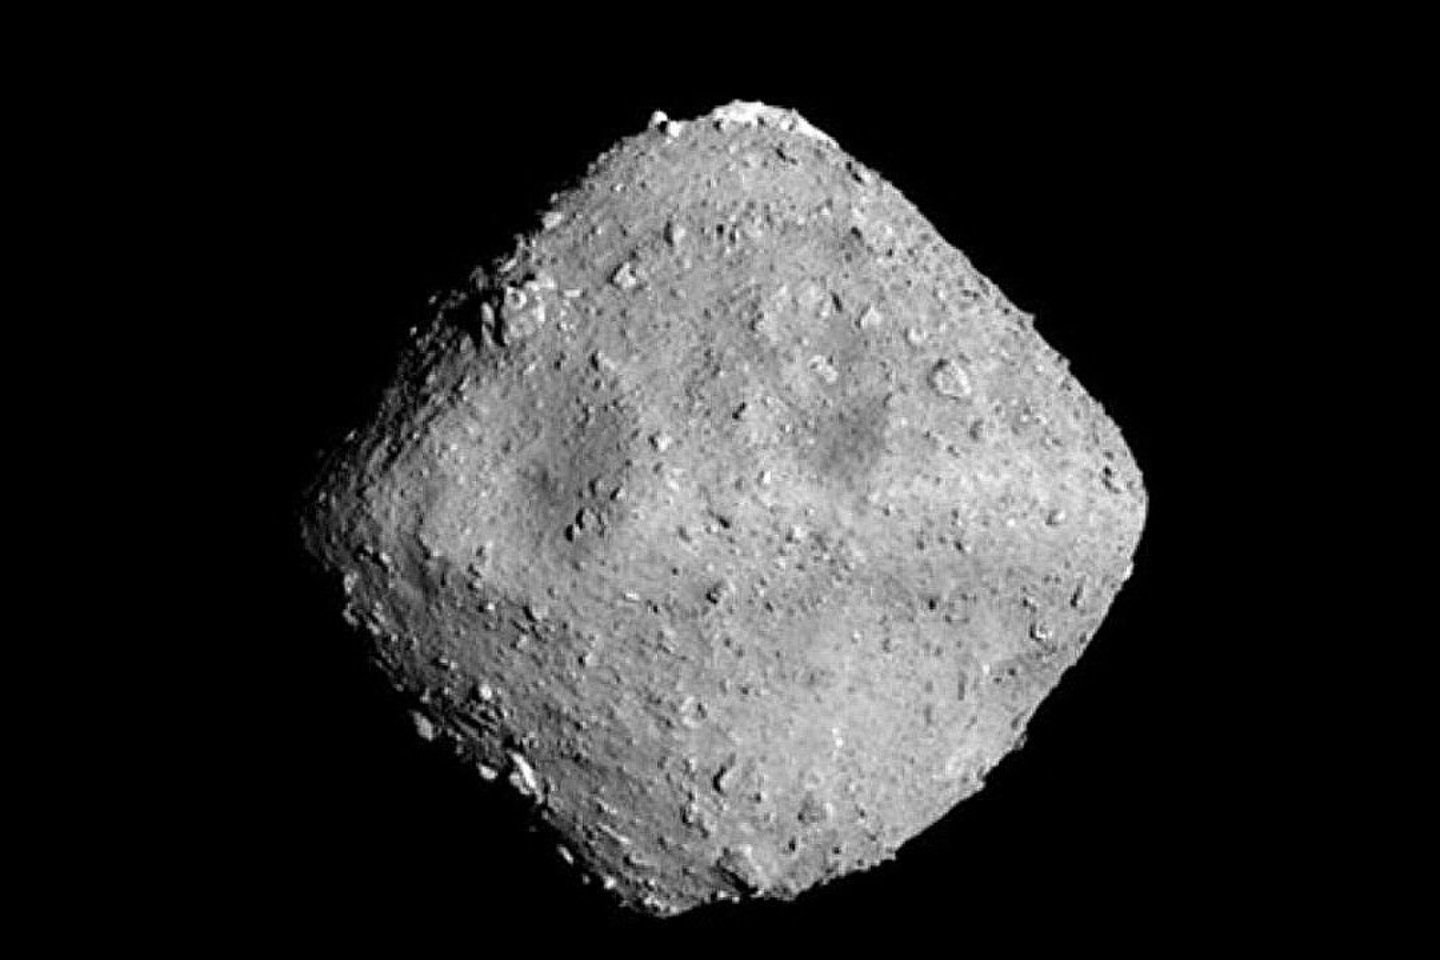  Iš asteroido Ryugu, esančio už maždaug 300 mln. kilometrų, paimta pirmykštė medžiaga po šešerių metų misijos 2020-aisiais buvo pargabenta į Žemę.<br> NASA nuotr.